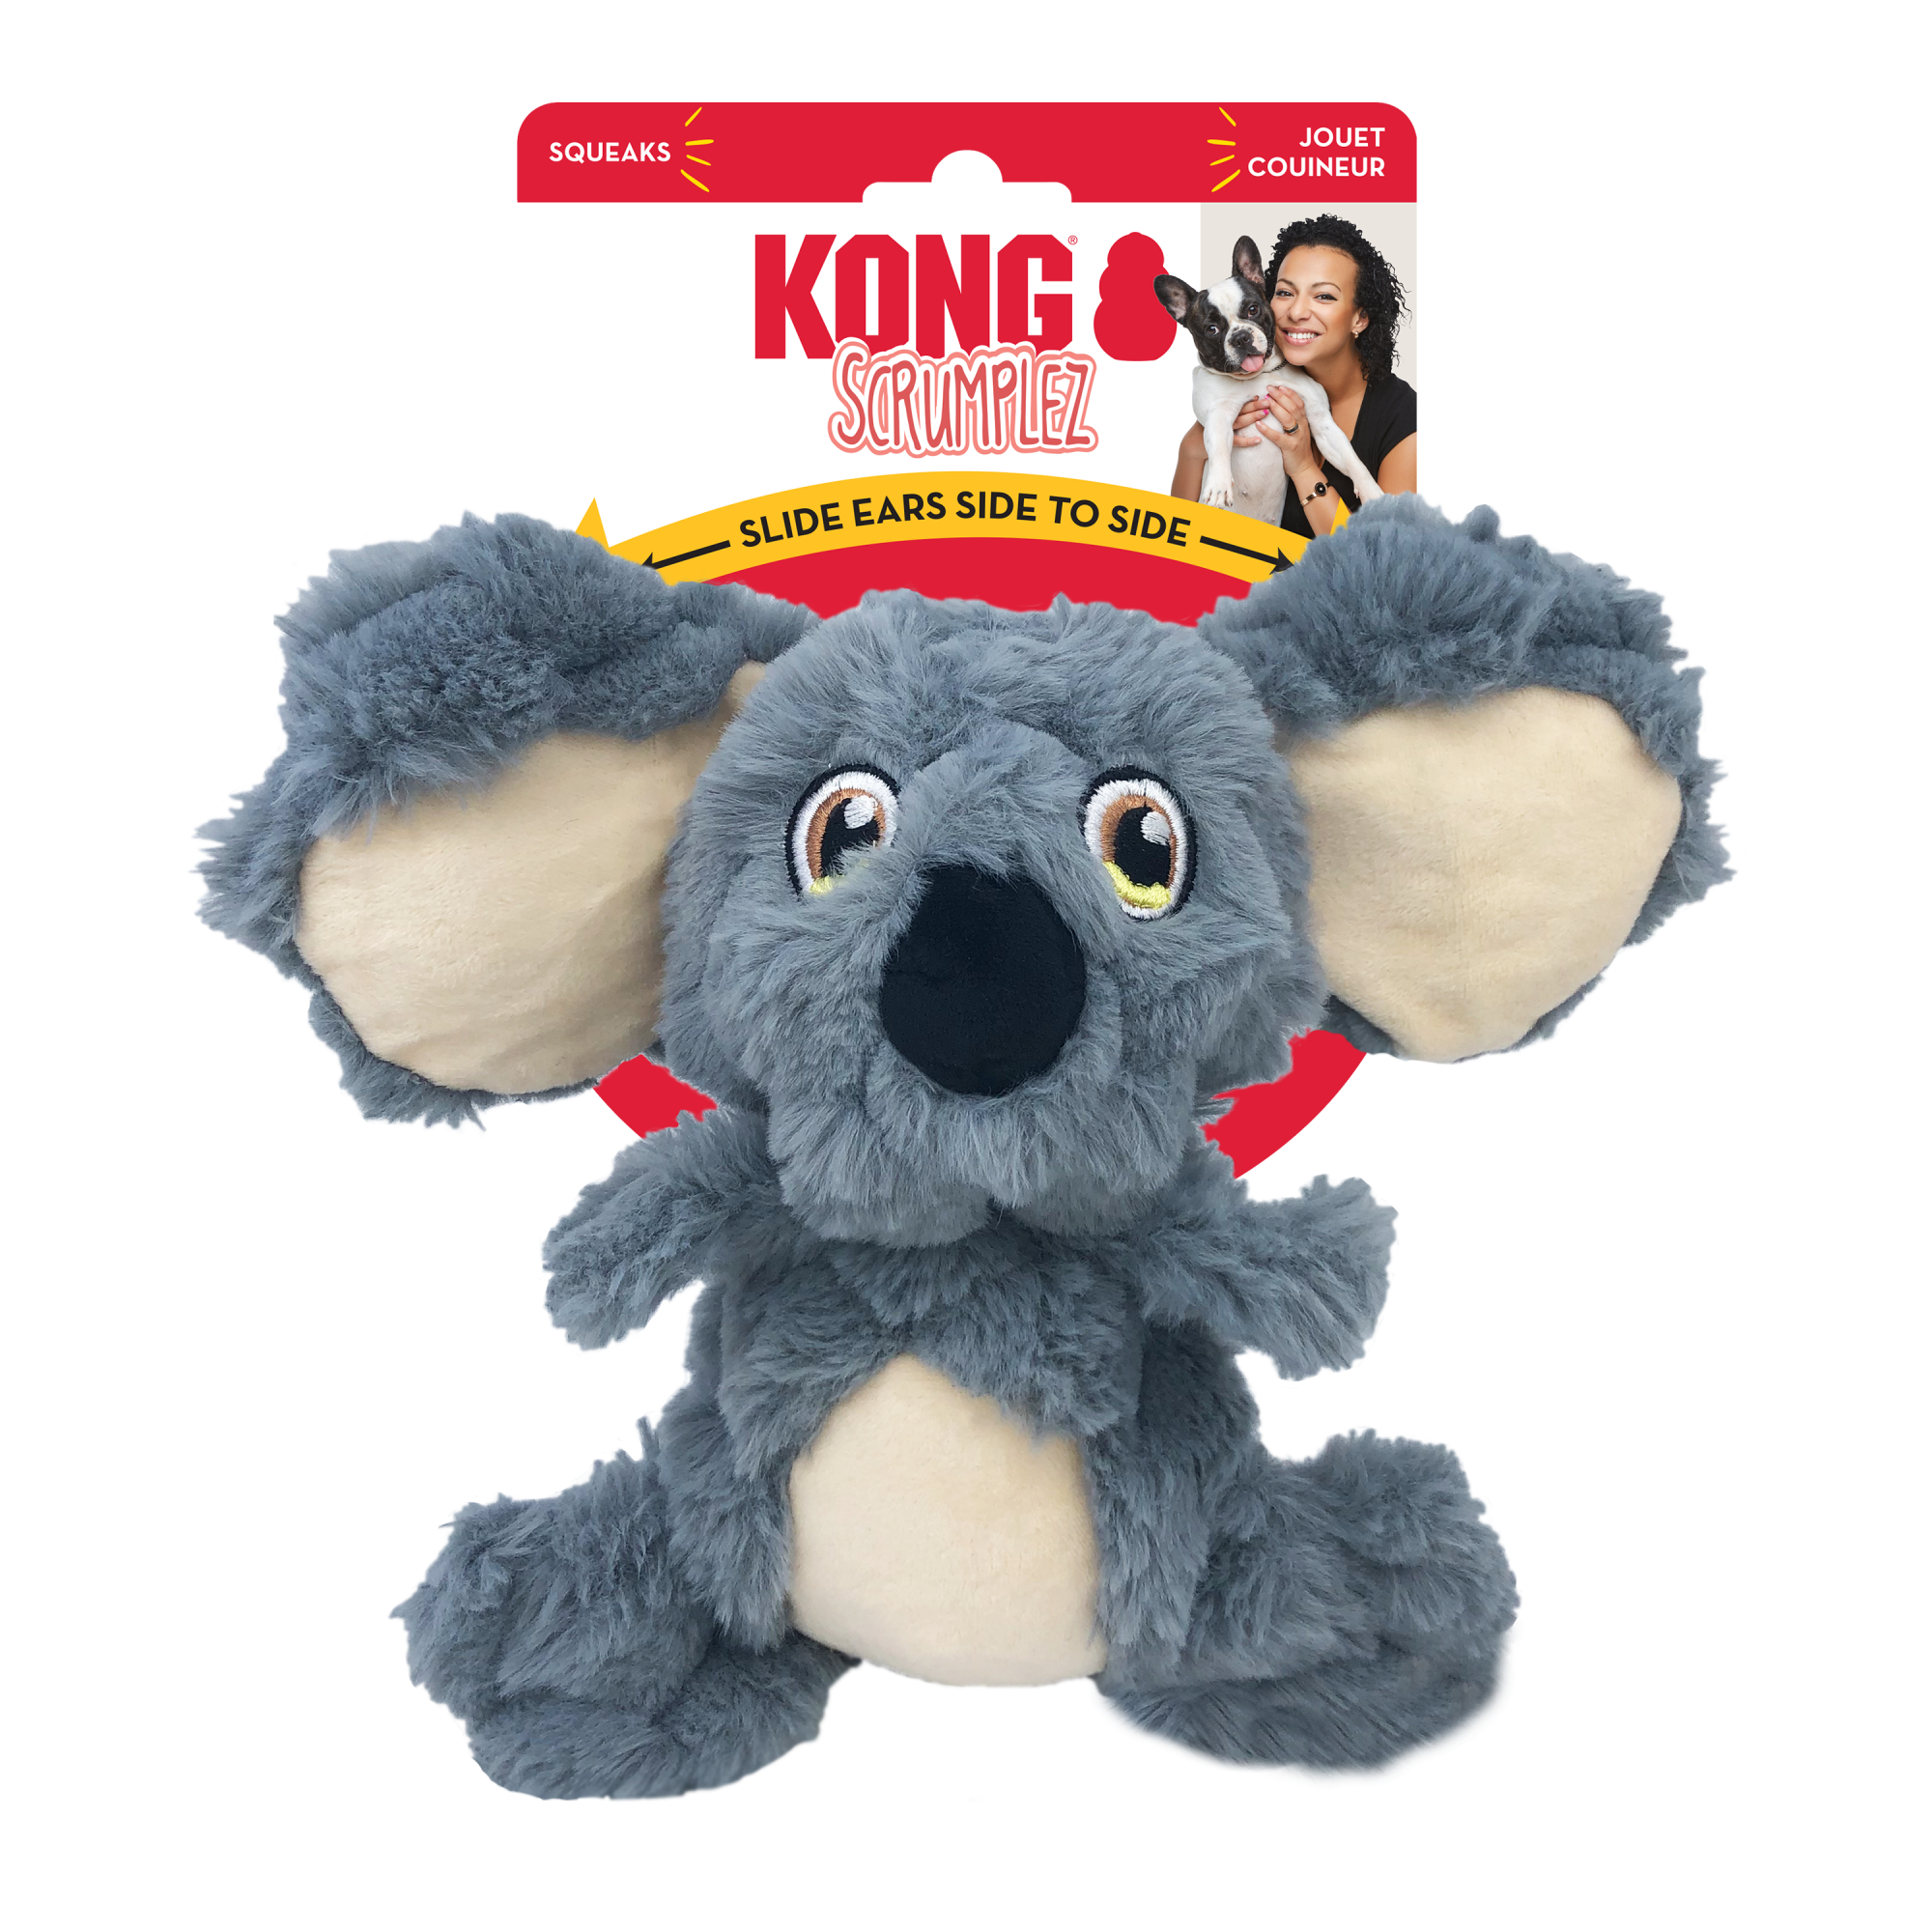 Peluche KONG Scrumplez Koala per cane 